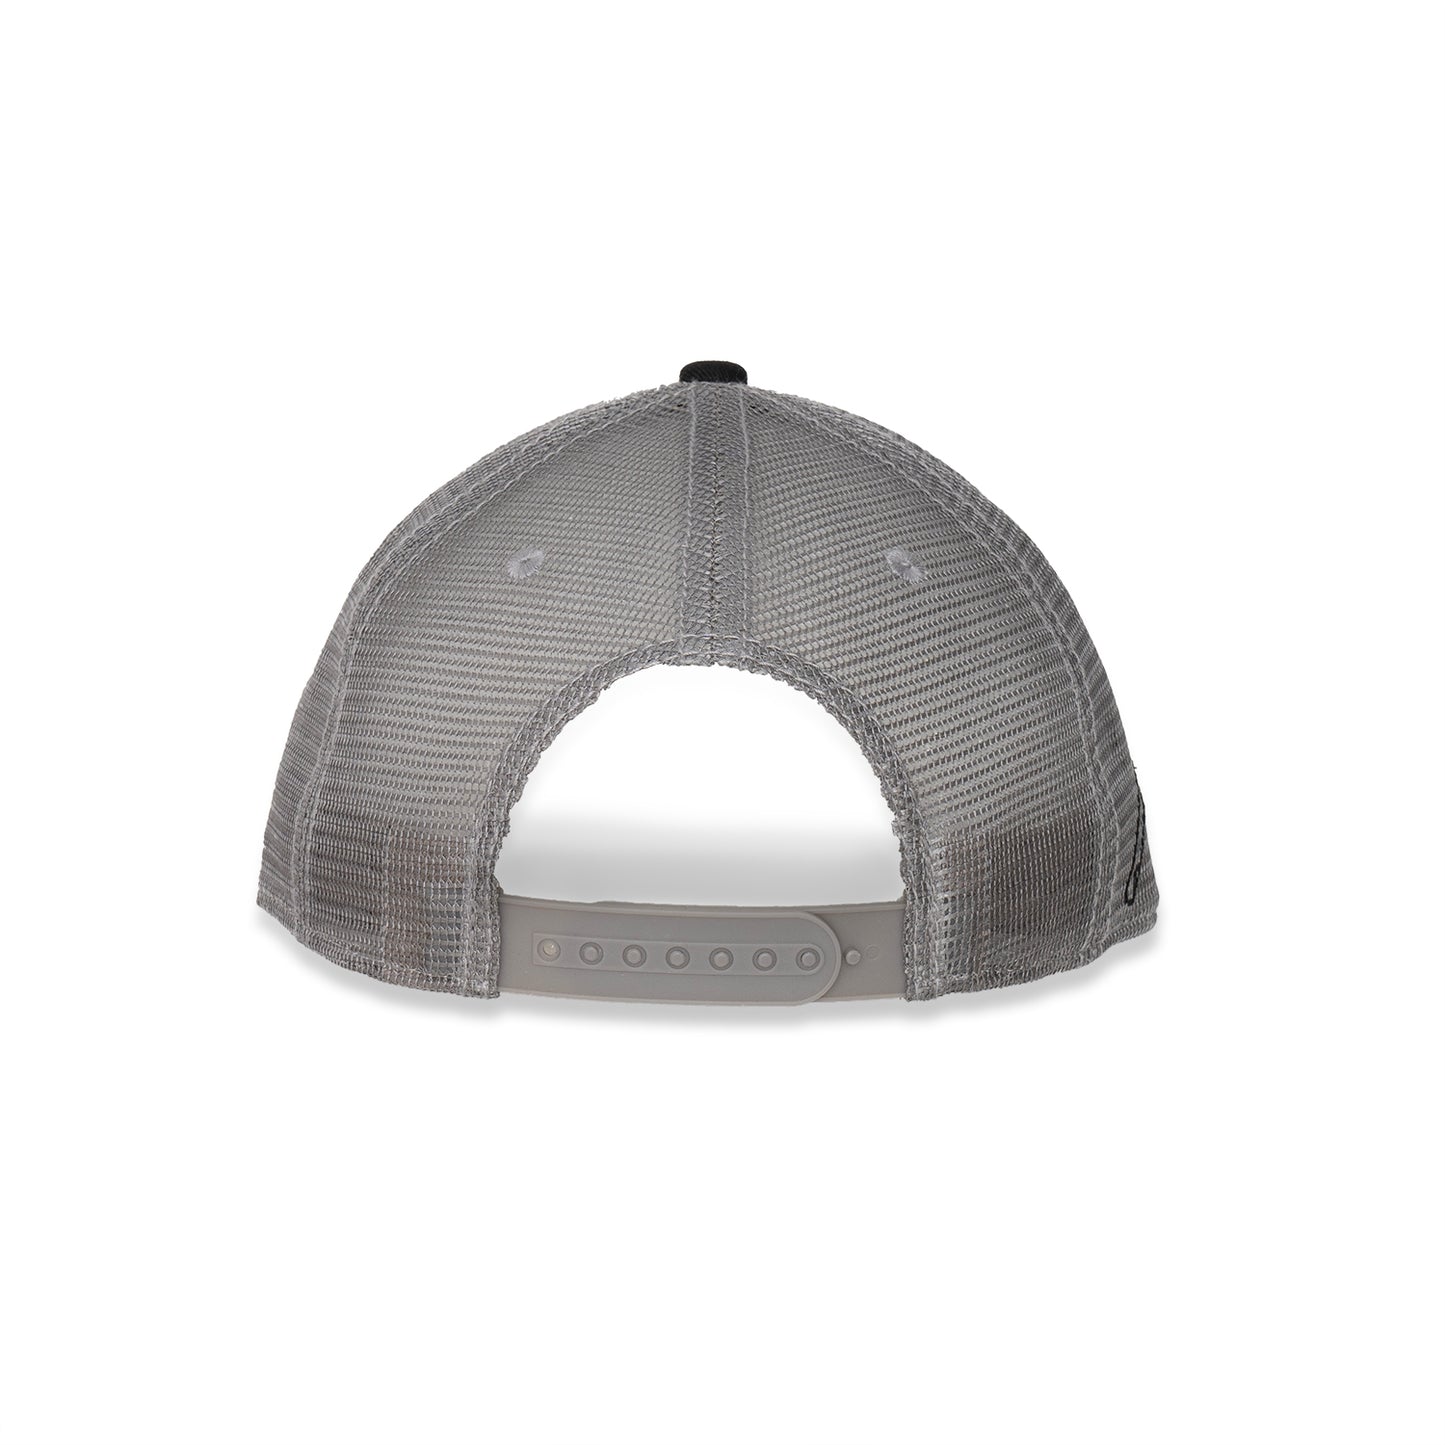 Mid-Ohio Flatbill Snapback Hat - Black/Grey